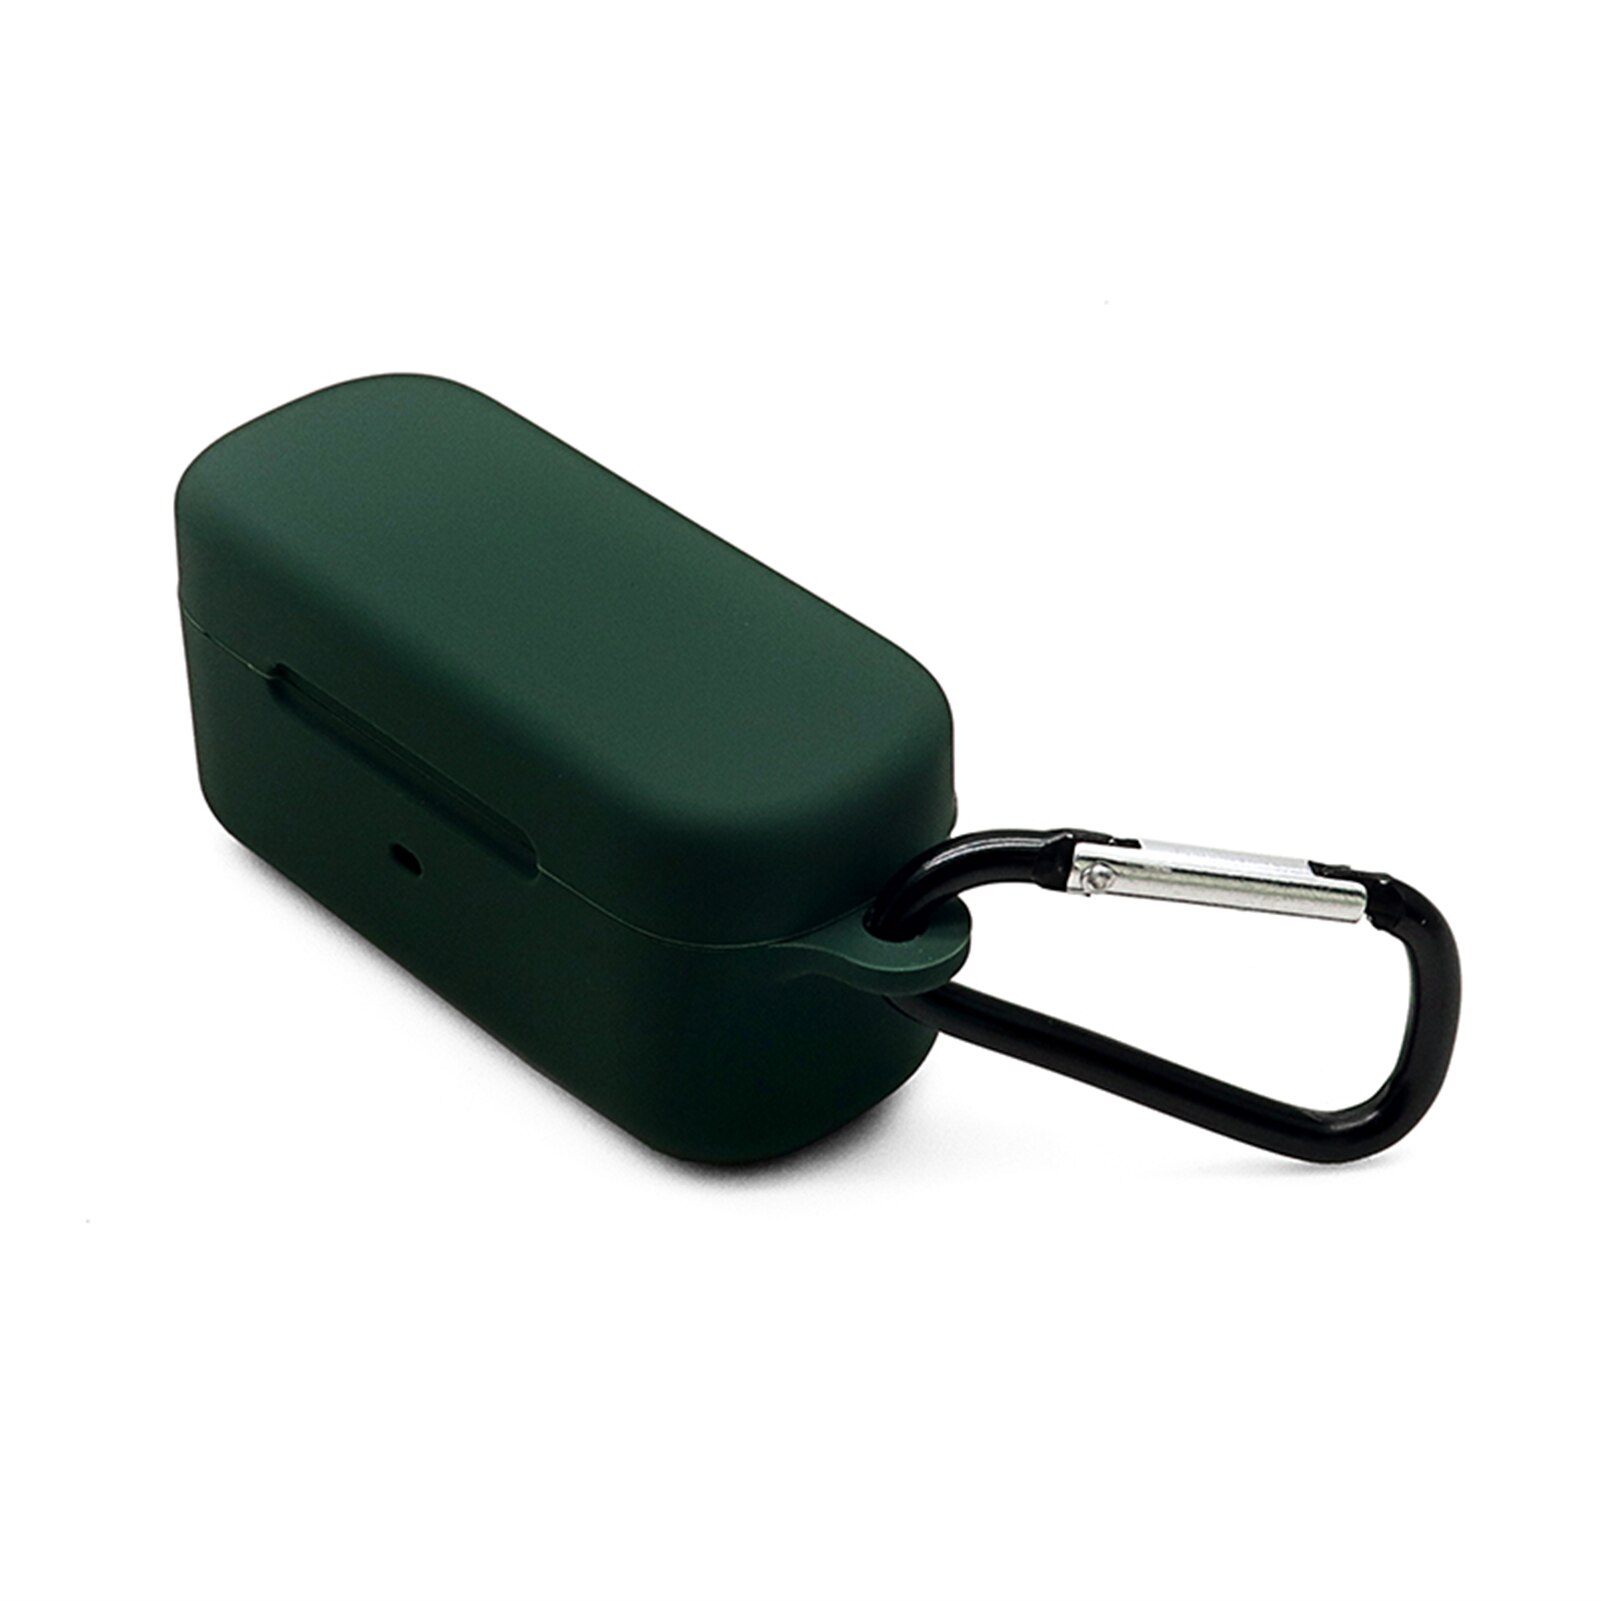 Zachte Siliconen Case Voor Fiil T1 Pro Beschermende Gevallen Bluetooth Draadloze Oortelefoon Cover Protector Shell Hoofdtelefoon Accessoire